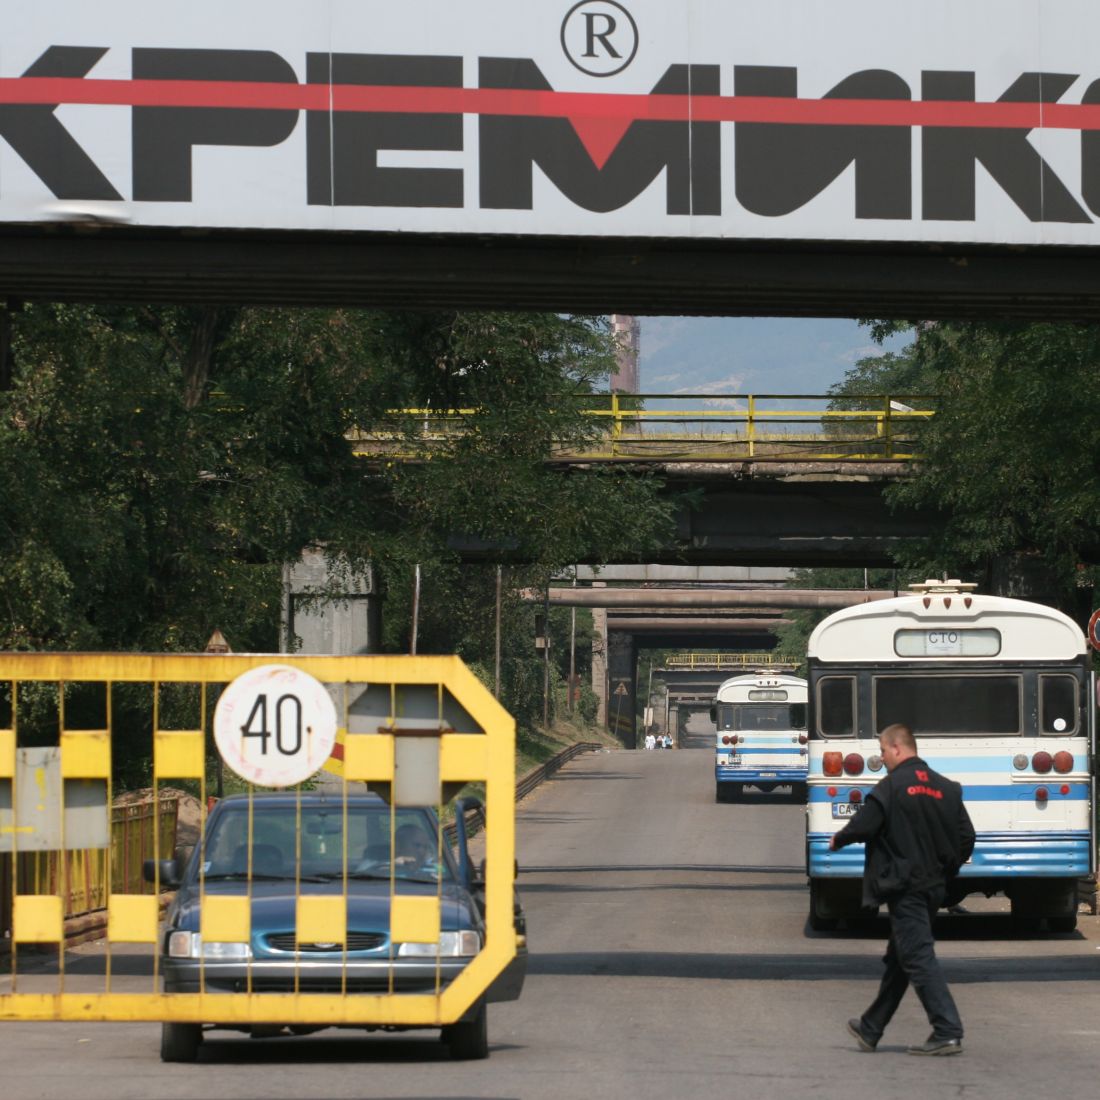 Вече е ясно кой е купувачът на ”Кремиковци”, каза министърът на икономиката Трайчо Трайков